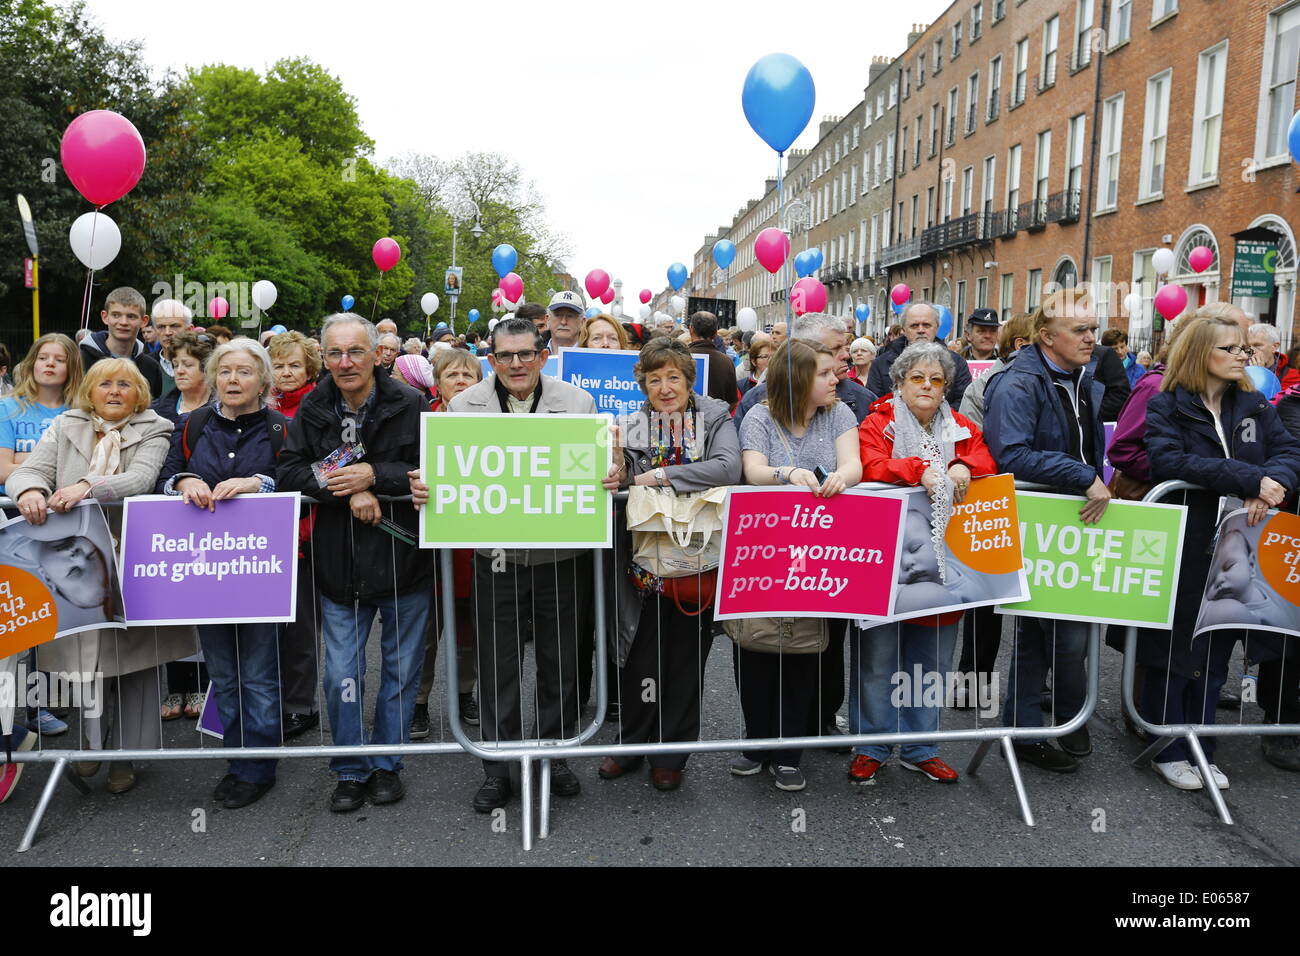 Dublin, Irland. 3. Mai 2014. Pro-Life-Aktivisten sind mit Anti-Abtreibungs-Poster bei der "nationalen Mahnwache für das Leben" abgebildet. Tausende kamen für die "nationale Mahnwache für das Leben" in Dublins Merrion Square Politiker fordern eine Aufhebung der Schutz des Lebens während der Schwangerschaft Bill 2013 die Abtreibung in Irland unter bestimmten Umständen erlaubt. Stockfoto